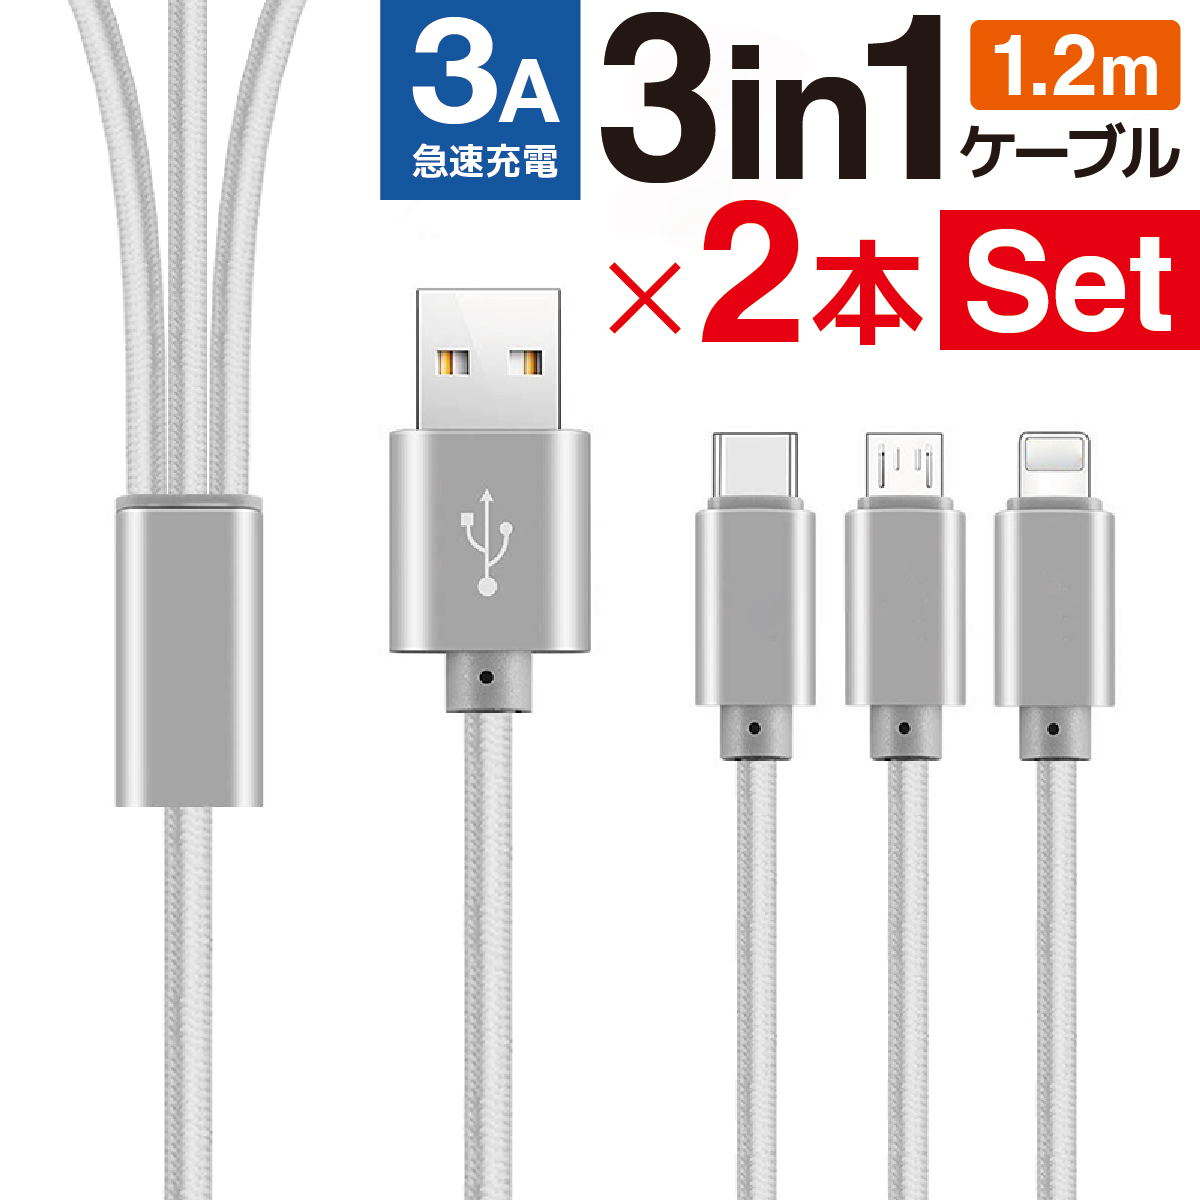 充電ケーブル USB iPhone 3in1 type-c micro-usb Lightning 2本セット 1.2m iPad Android  3A 3本同時 急速充電 1ヶ月保証 :ws11:World Select 通販 